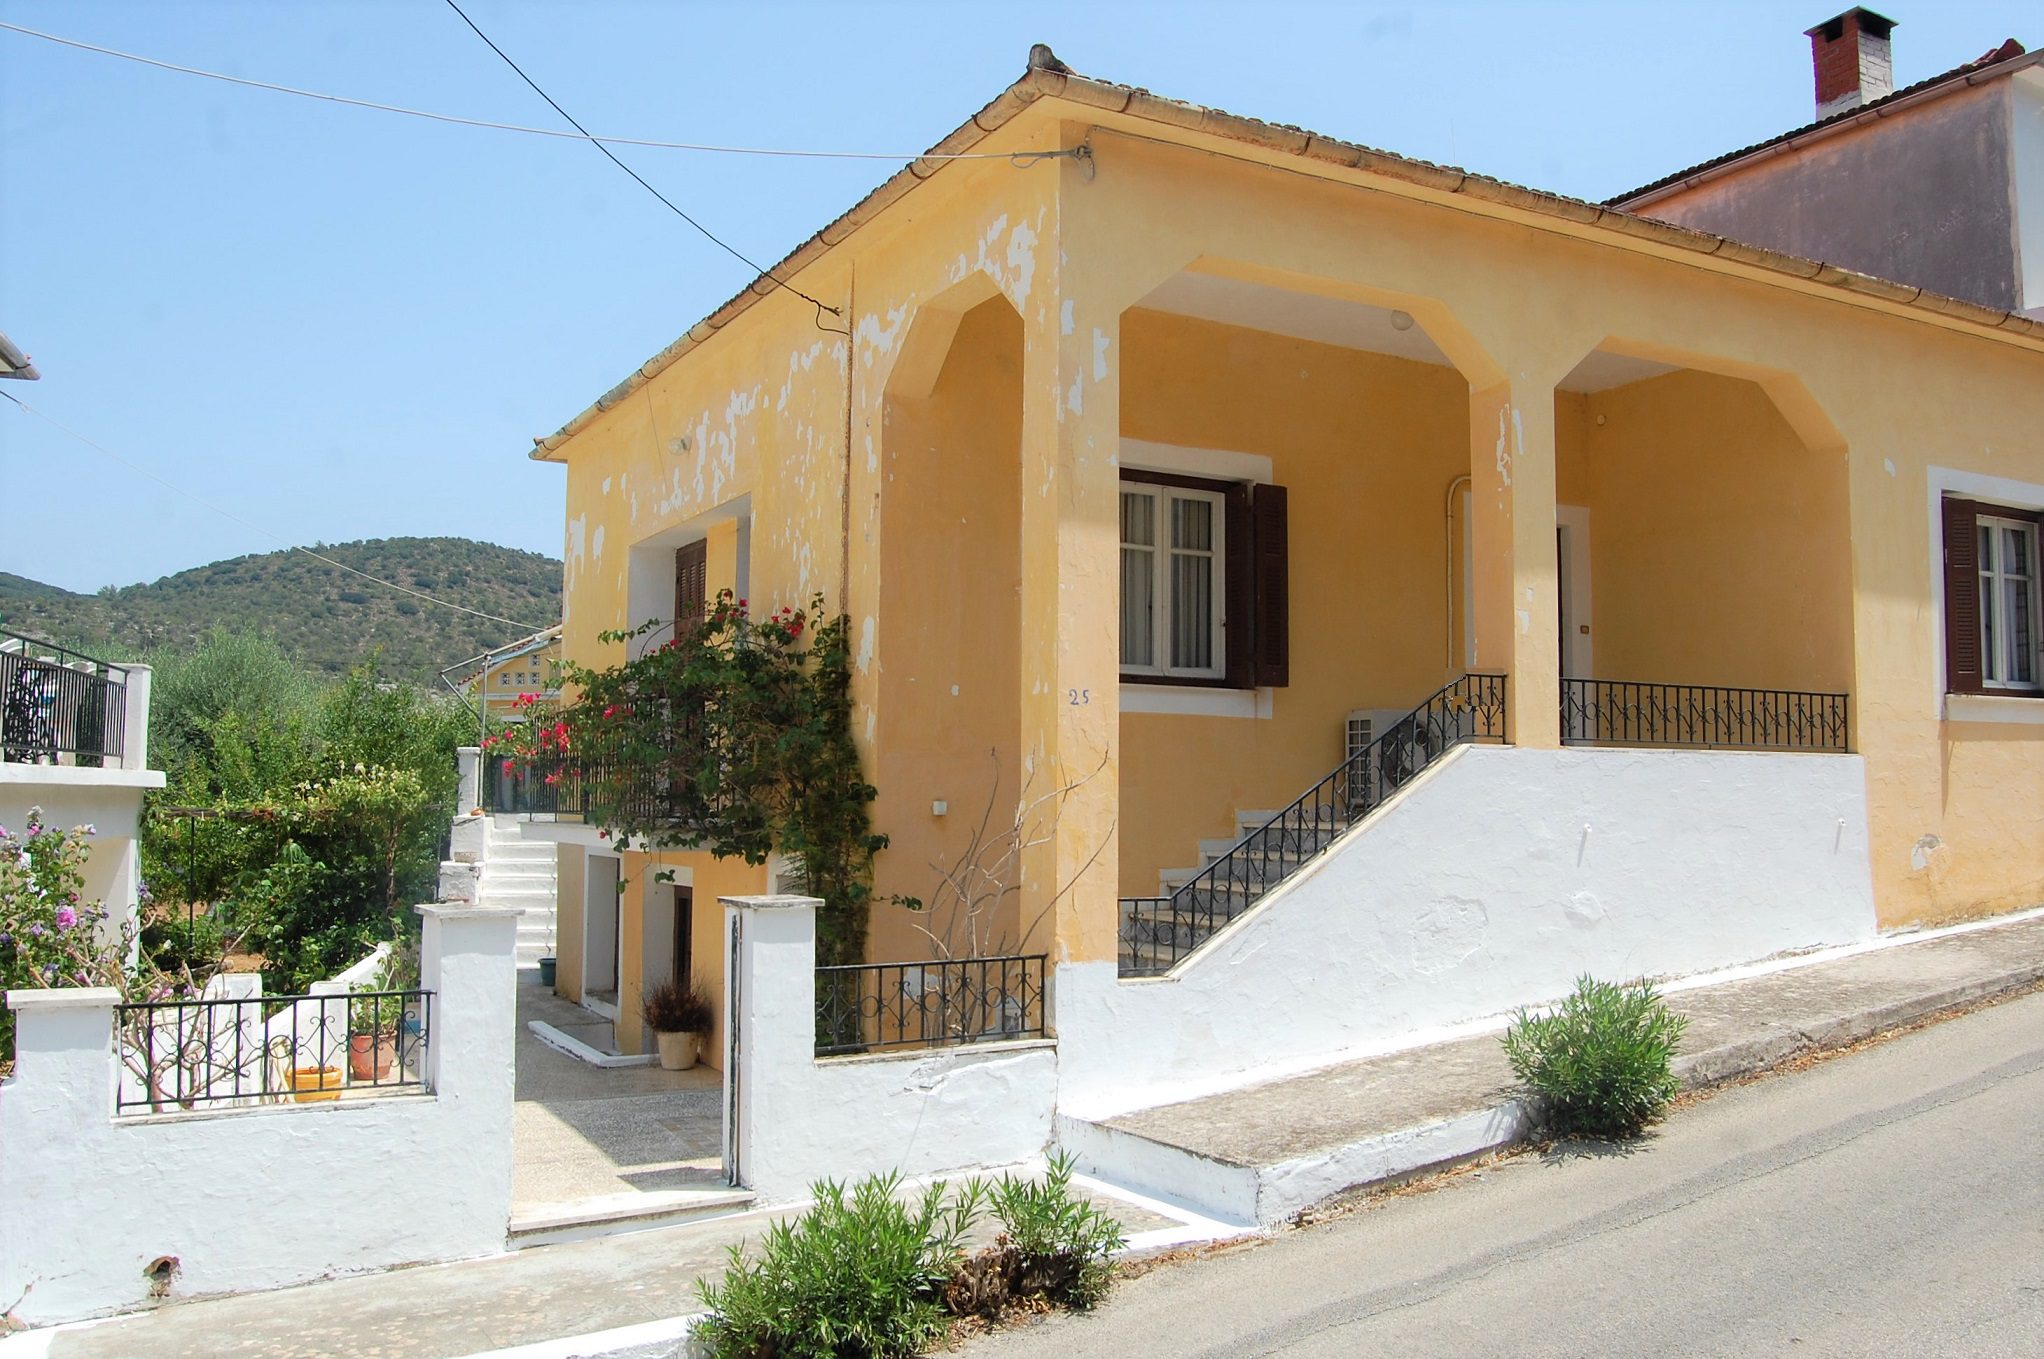 Εξωτερικό σπίτι προς πώληση στην Ιθάκη Ελλάδα, Βαθύ